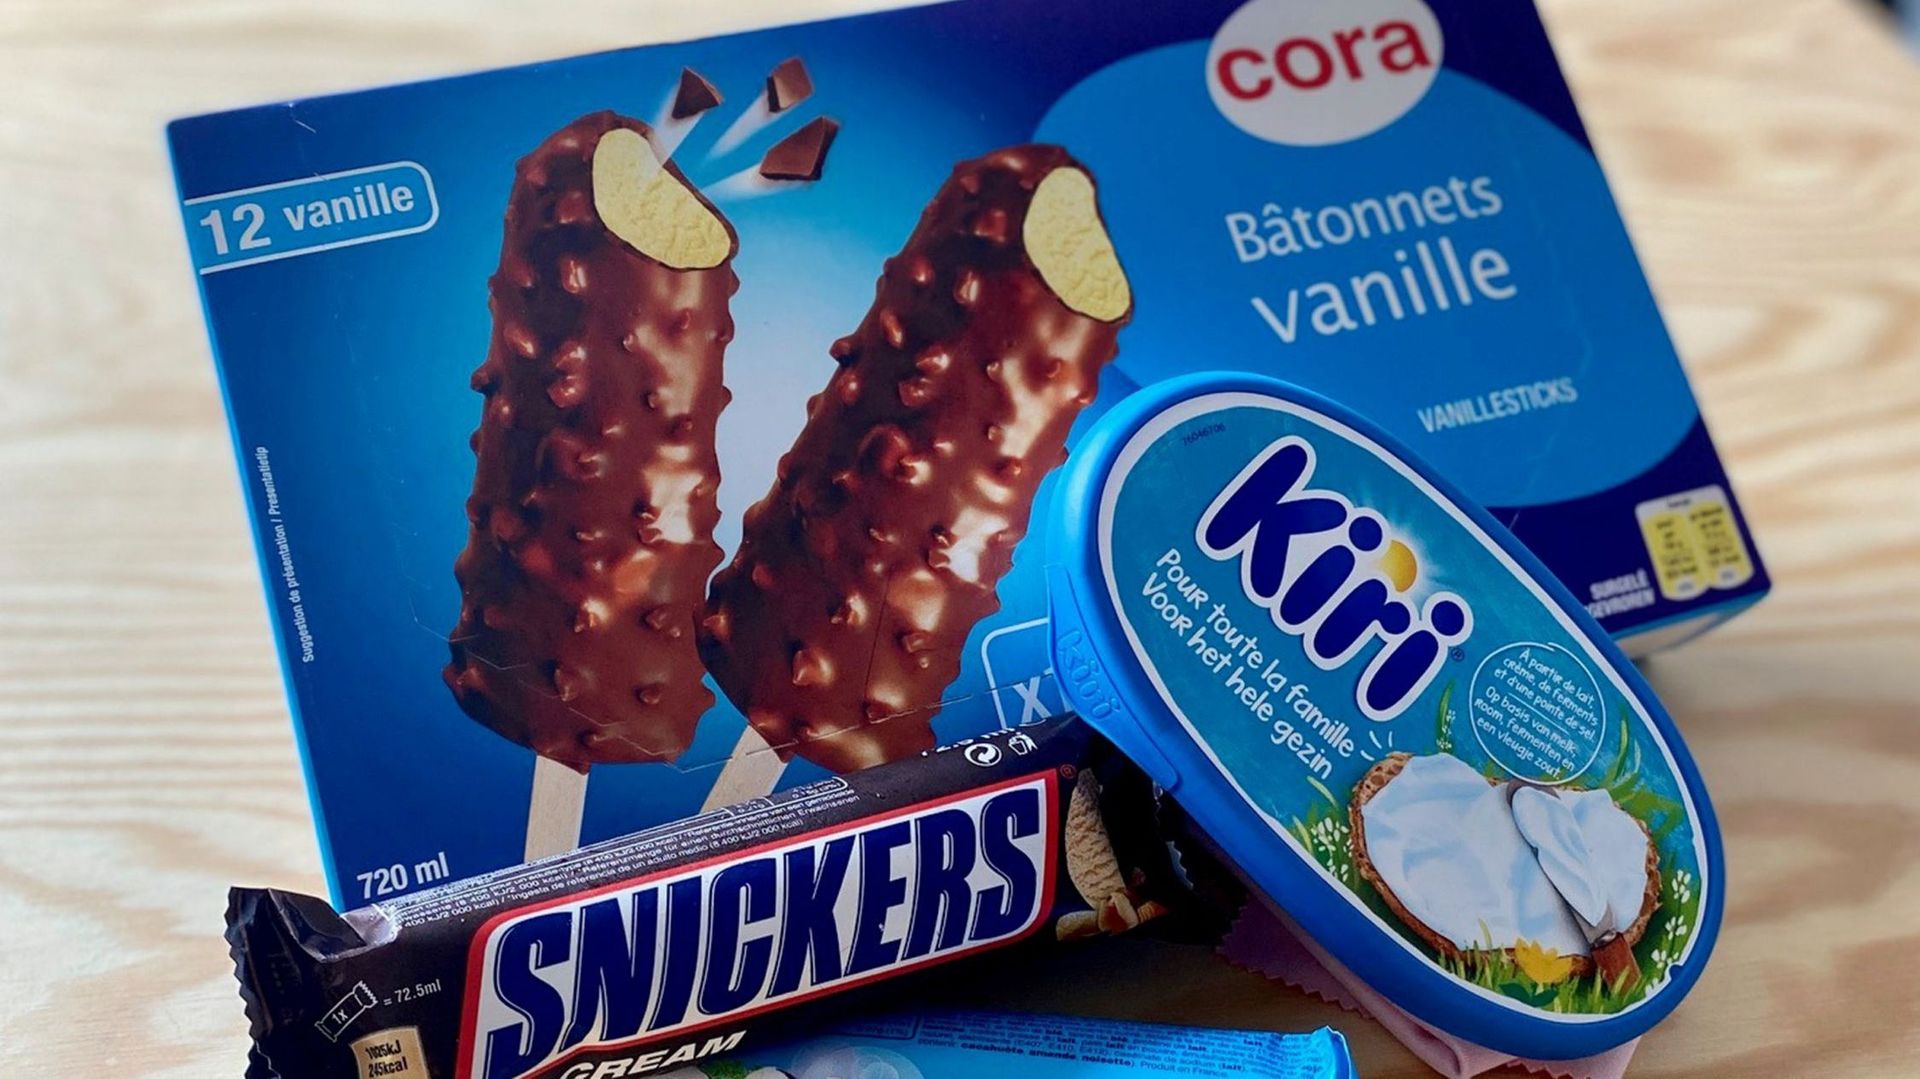 kiri-glaces-snickers-et-bounty-glaces-pourquoi-sont-ils-retires-des-rayons-et-est-ce-dangereux-de-les-consommer